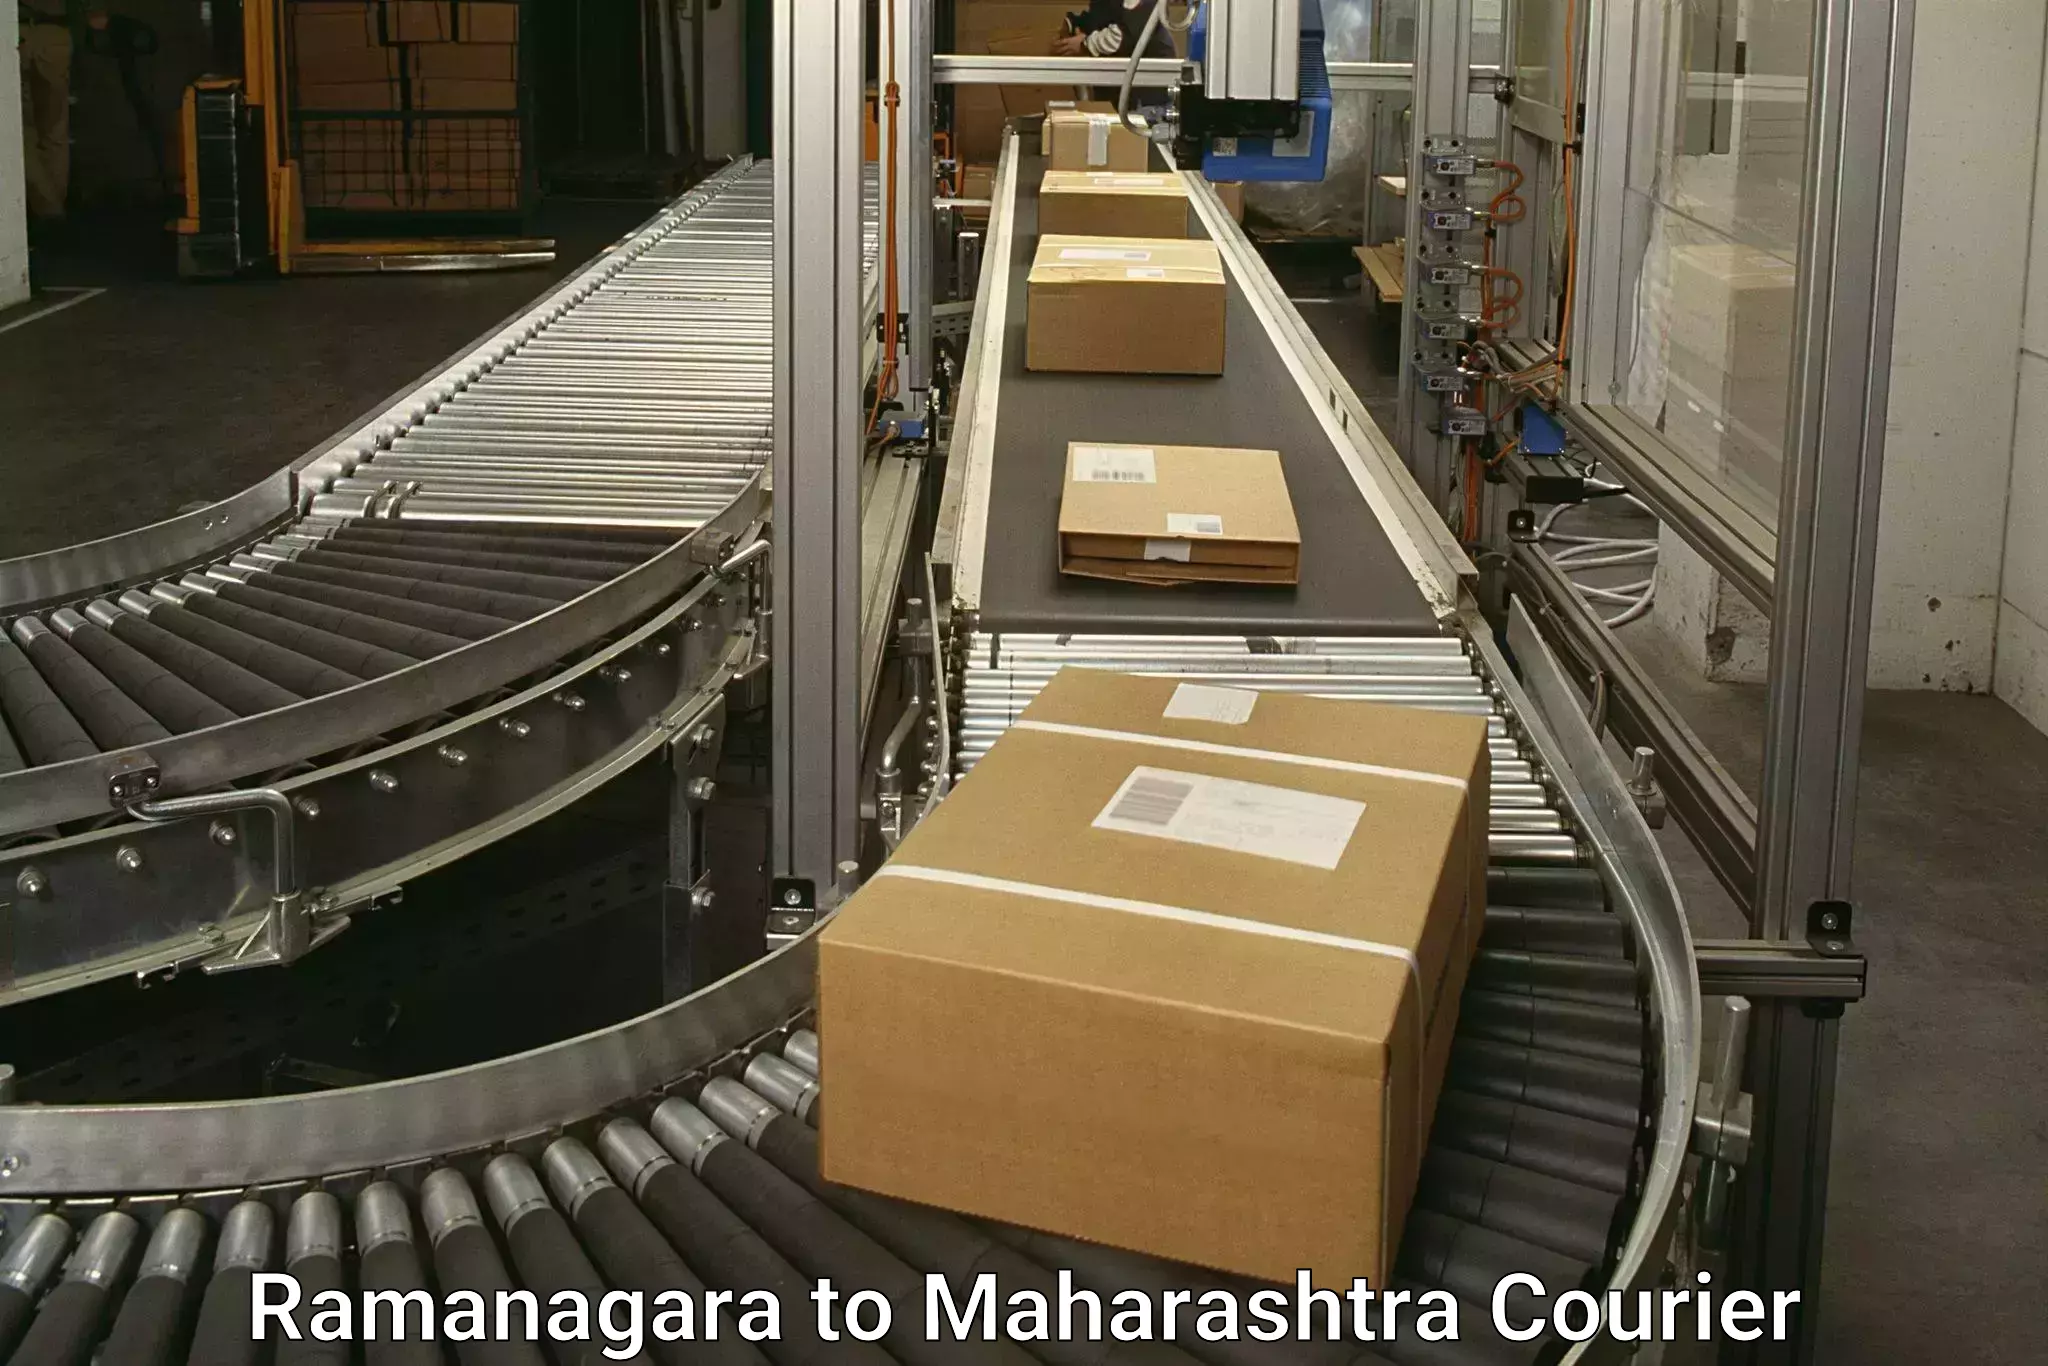 Premium courier services in Ramanagara to Mumbai Port